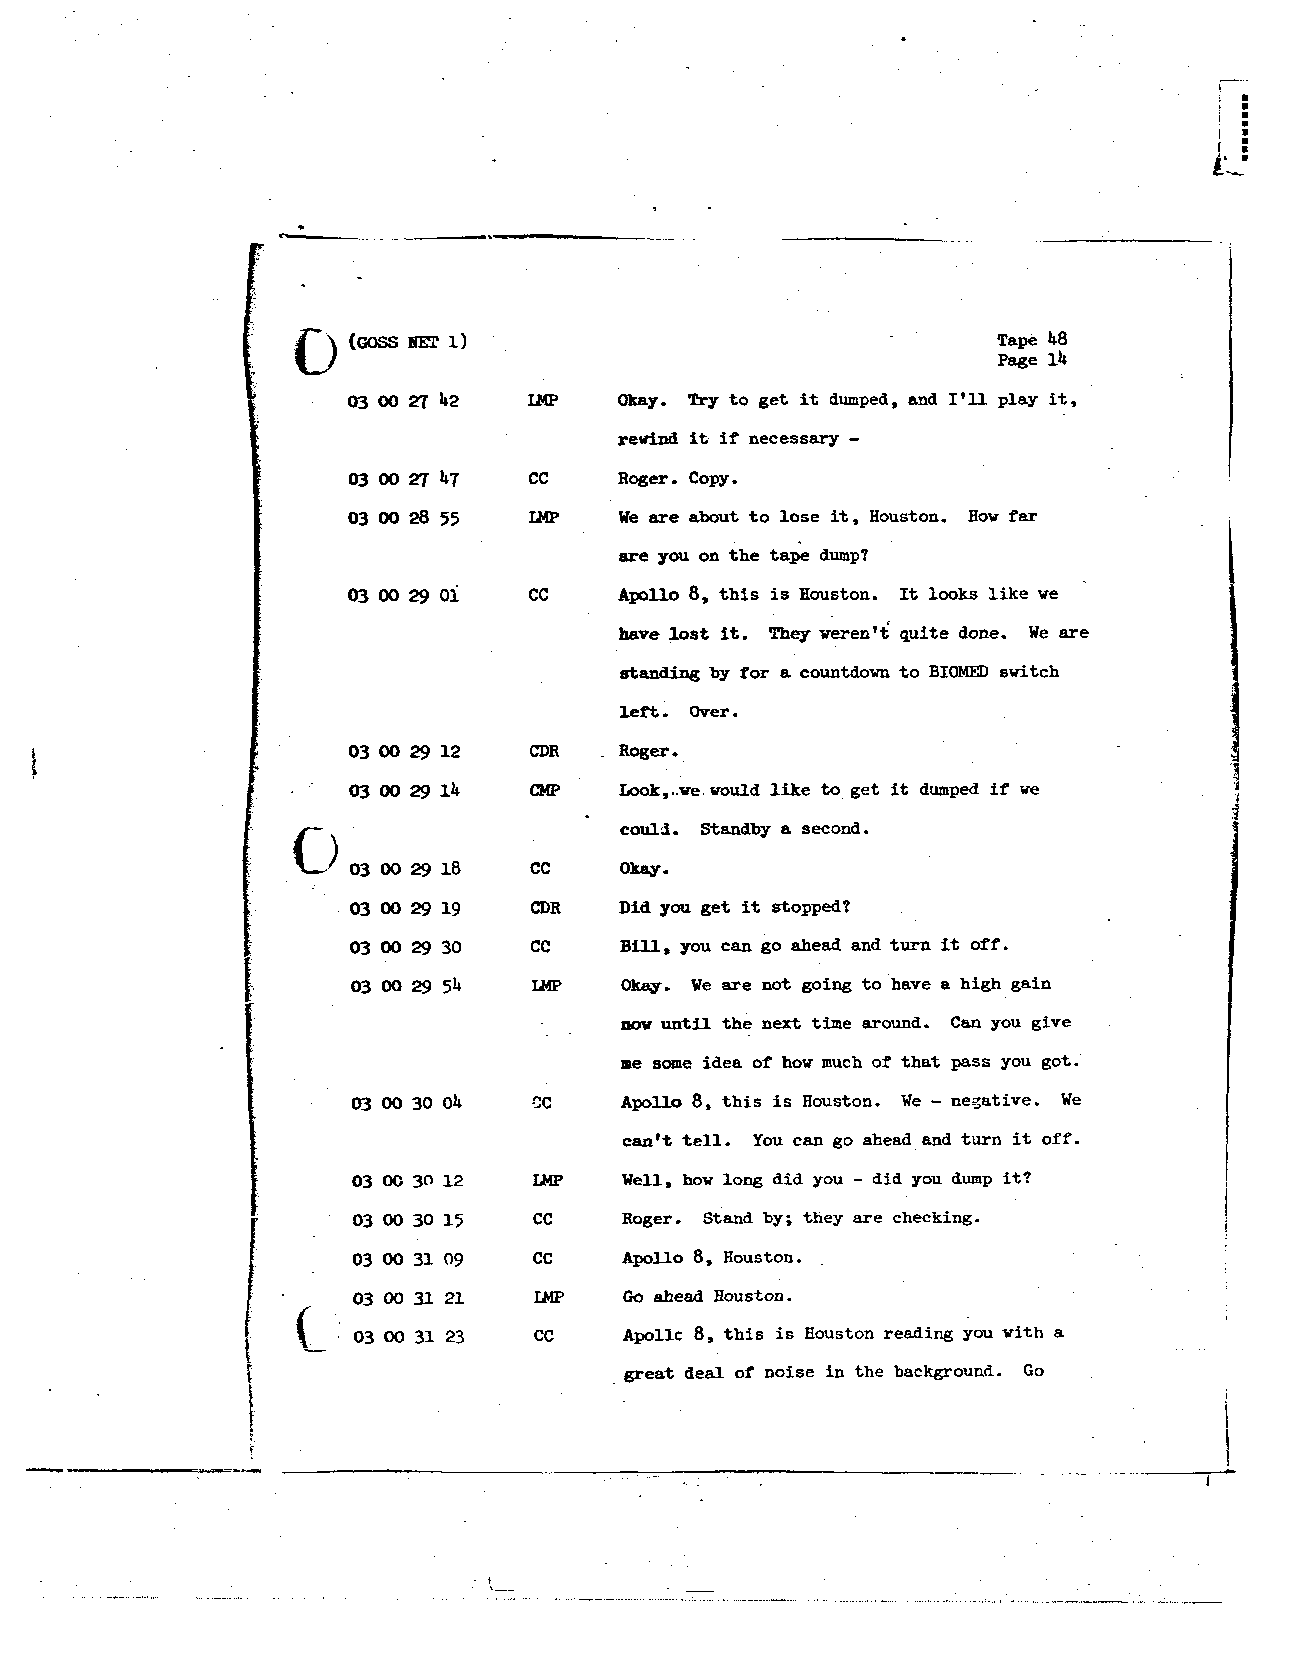 Page 386 of Apollo 8’s original transcript